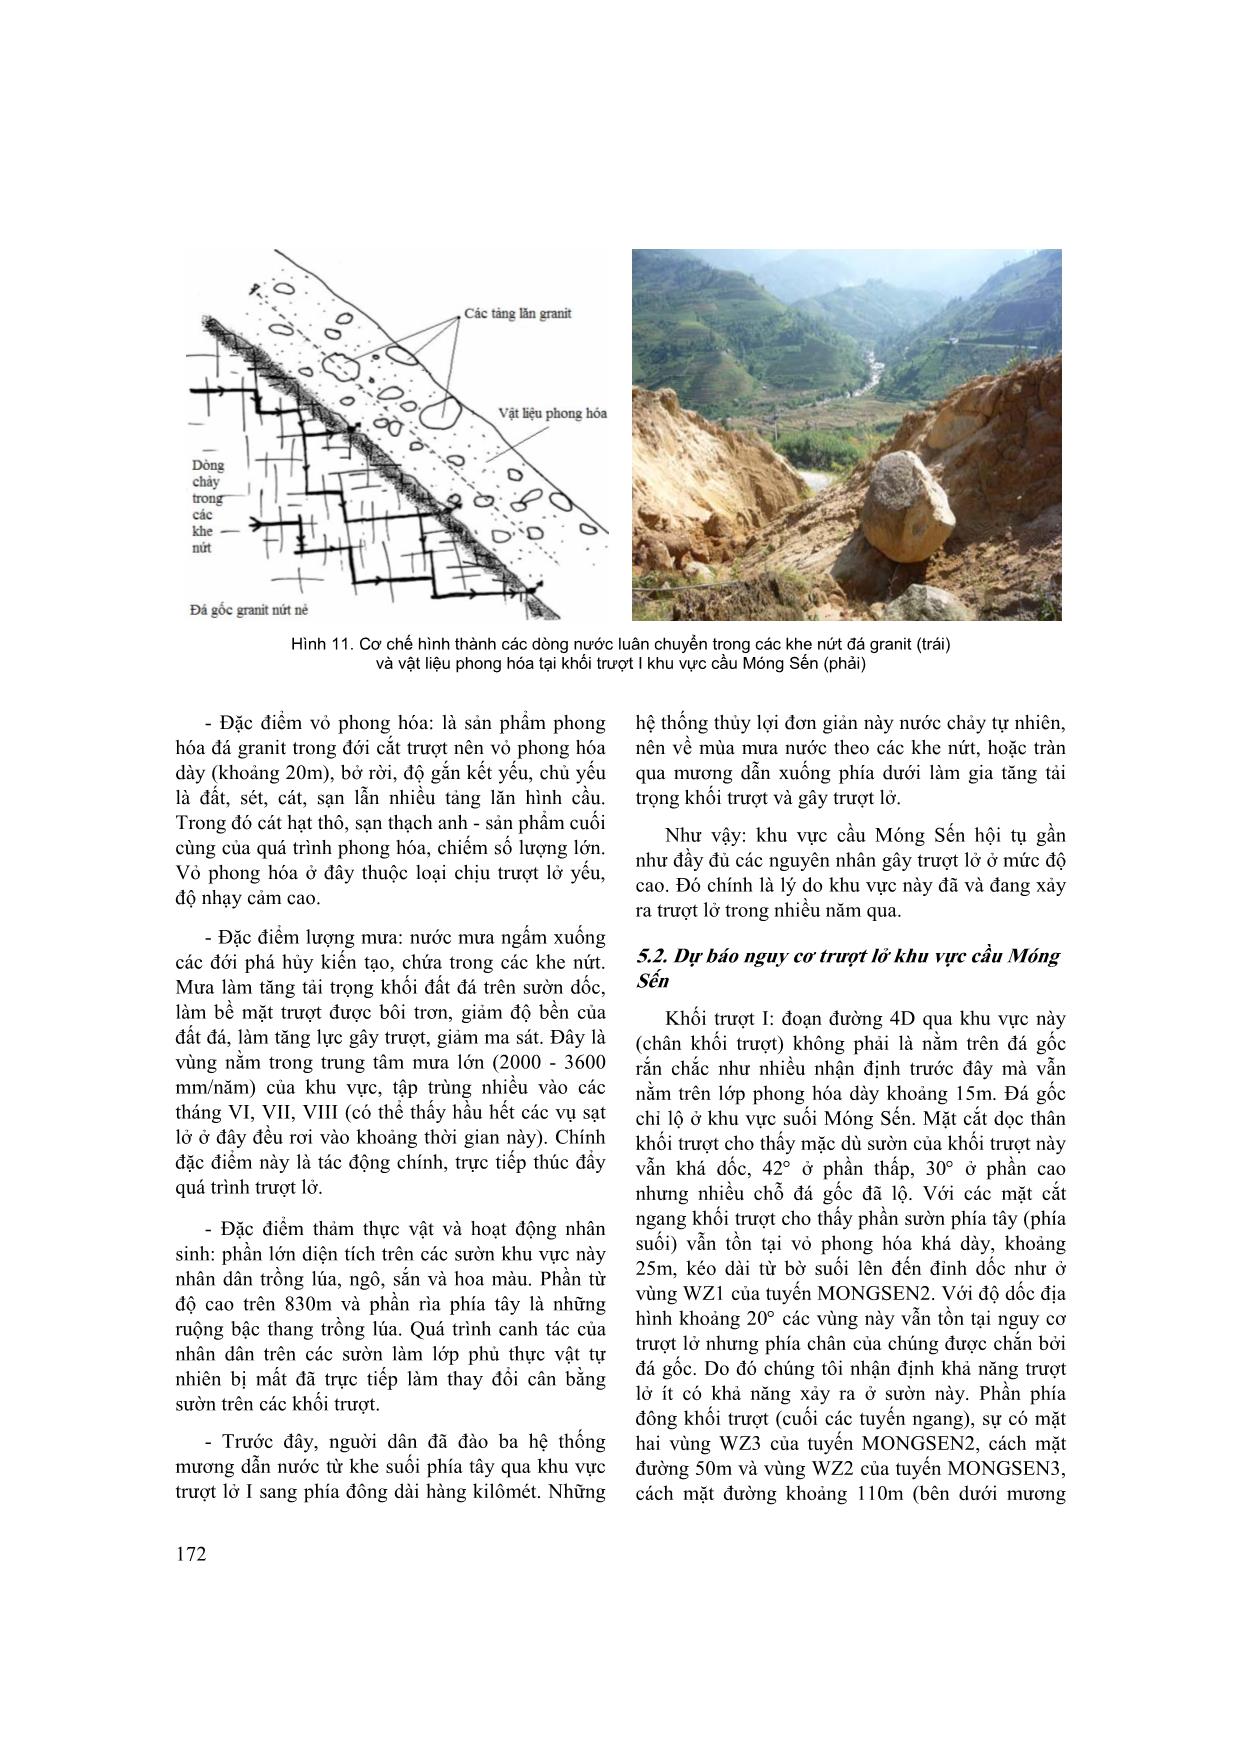 Nghiên cứu xác định nguyên nhân trượt lở khu vực cầu Móng Sến, tỉnh Lào Cai trang 9